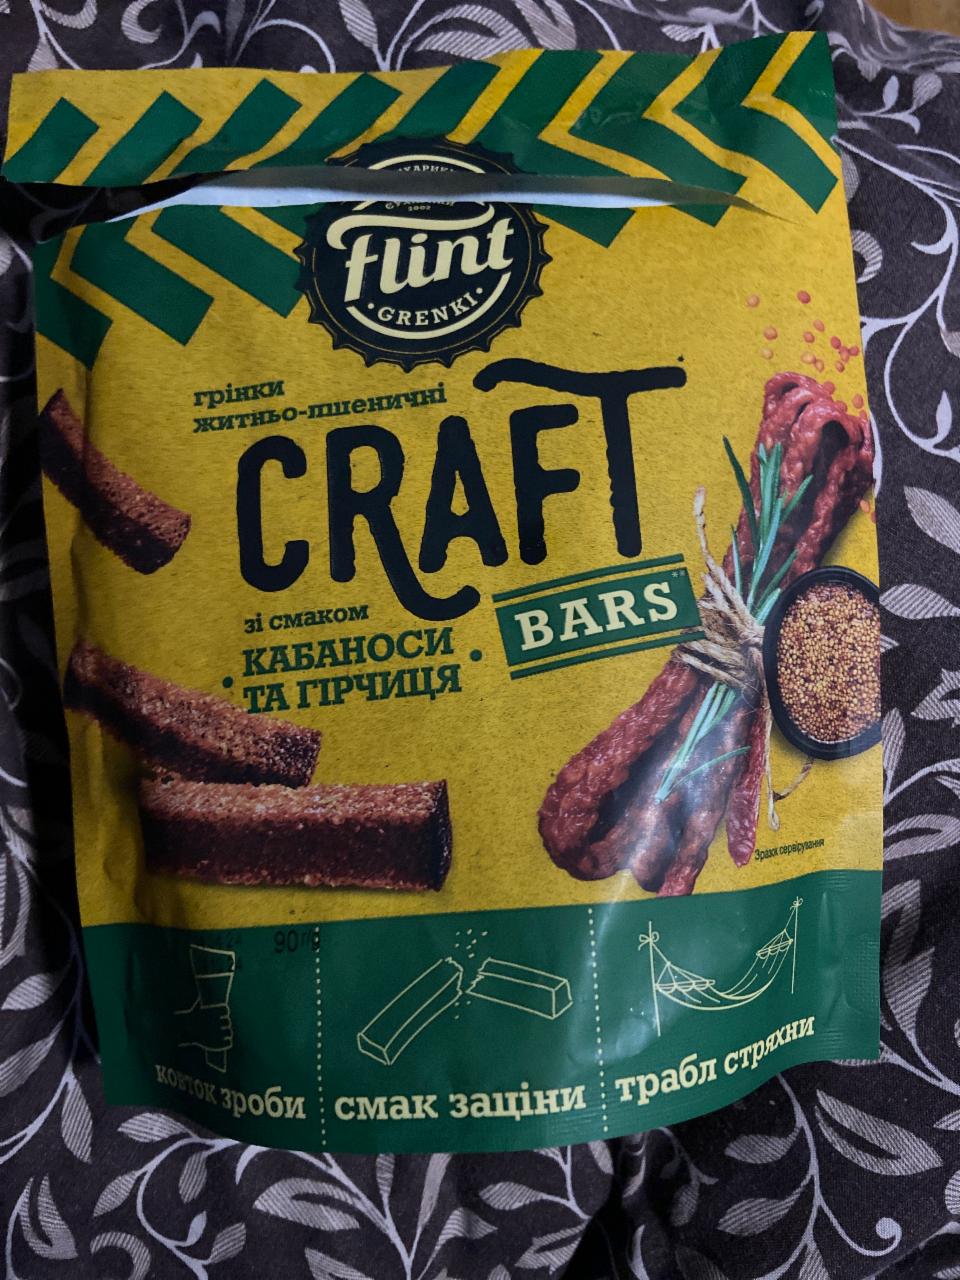 Фото - Гренки ржано-пшеничные Craft со вкусом Кабаносы и горчица Flint